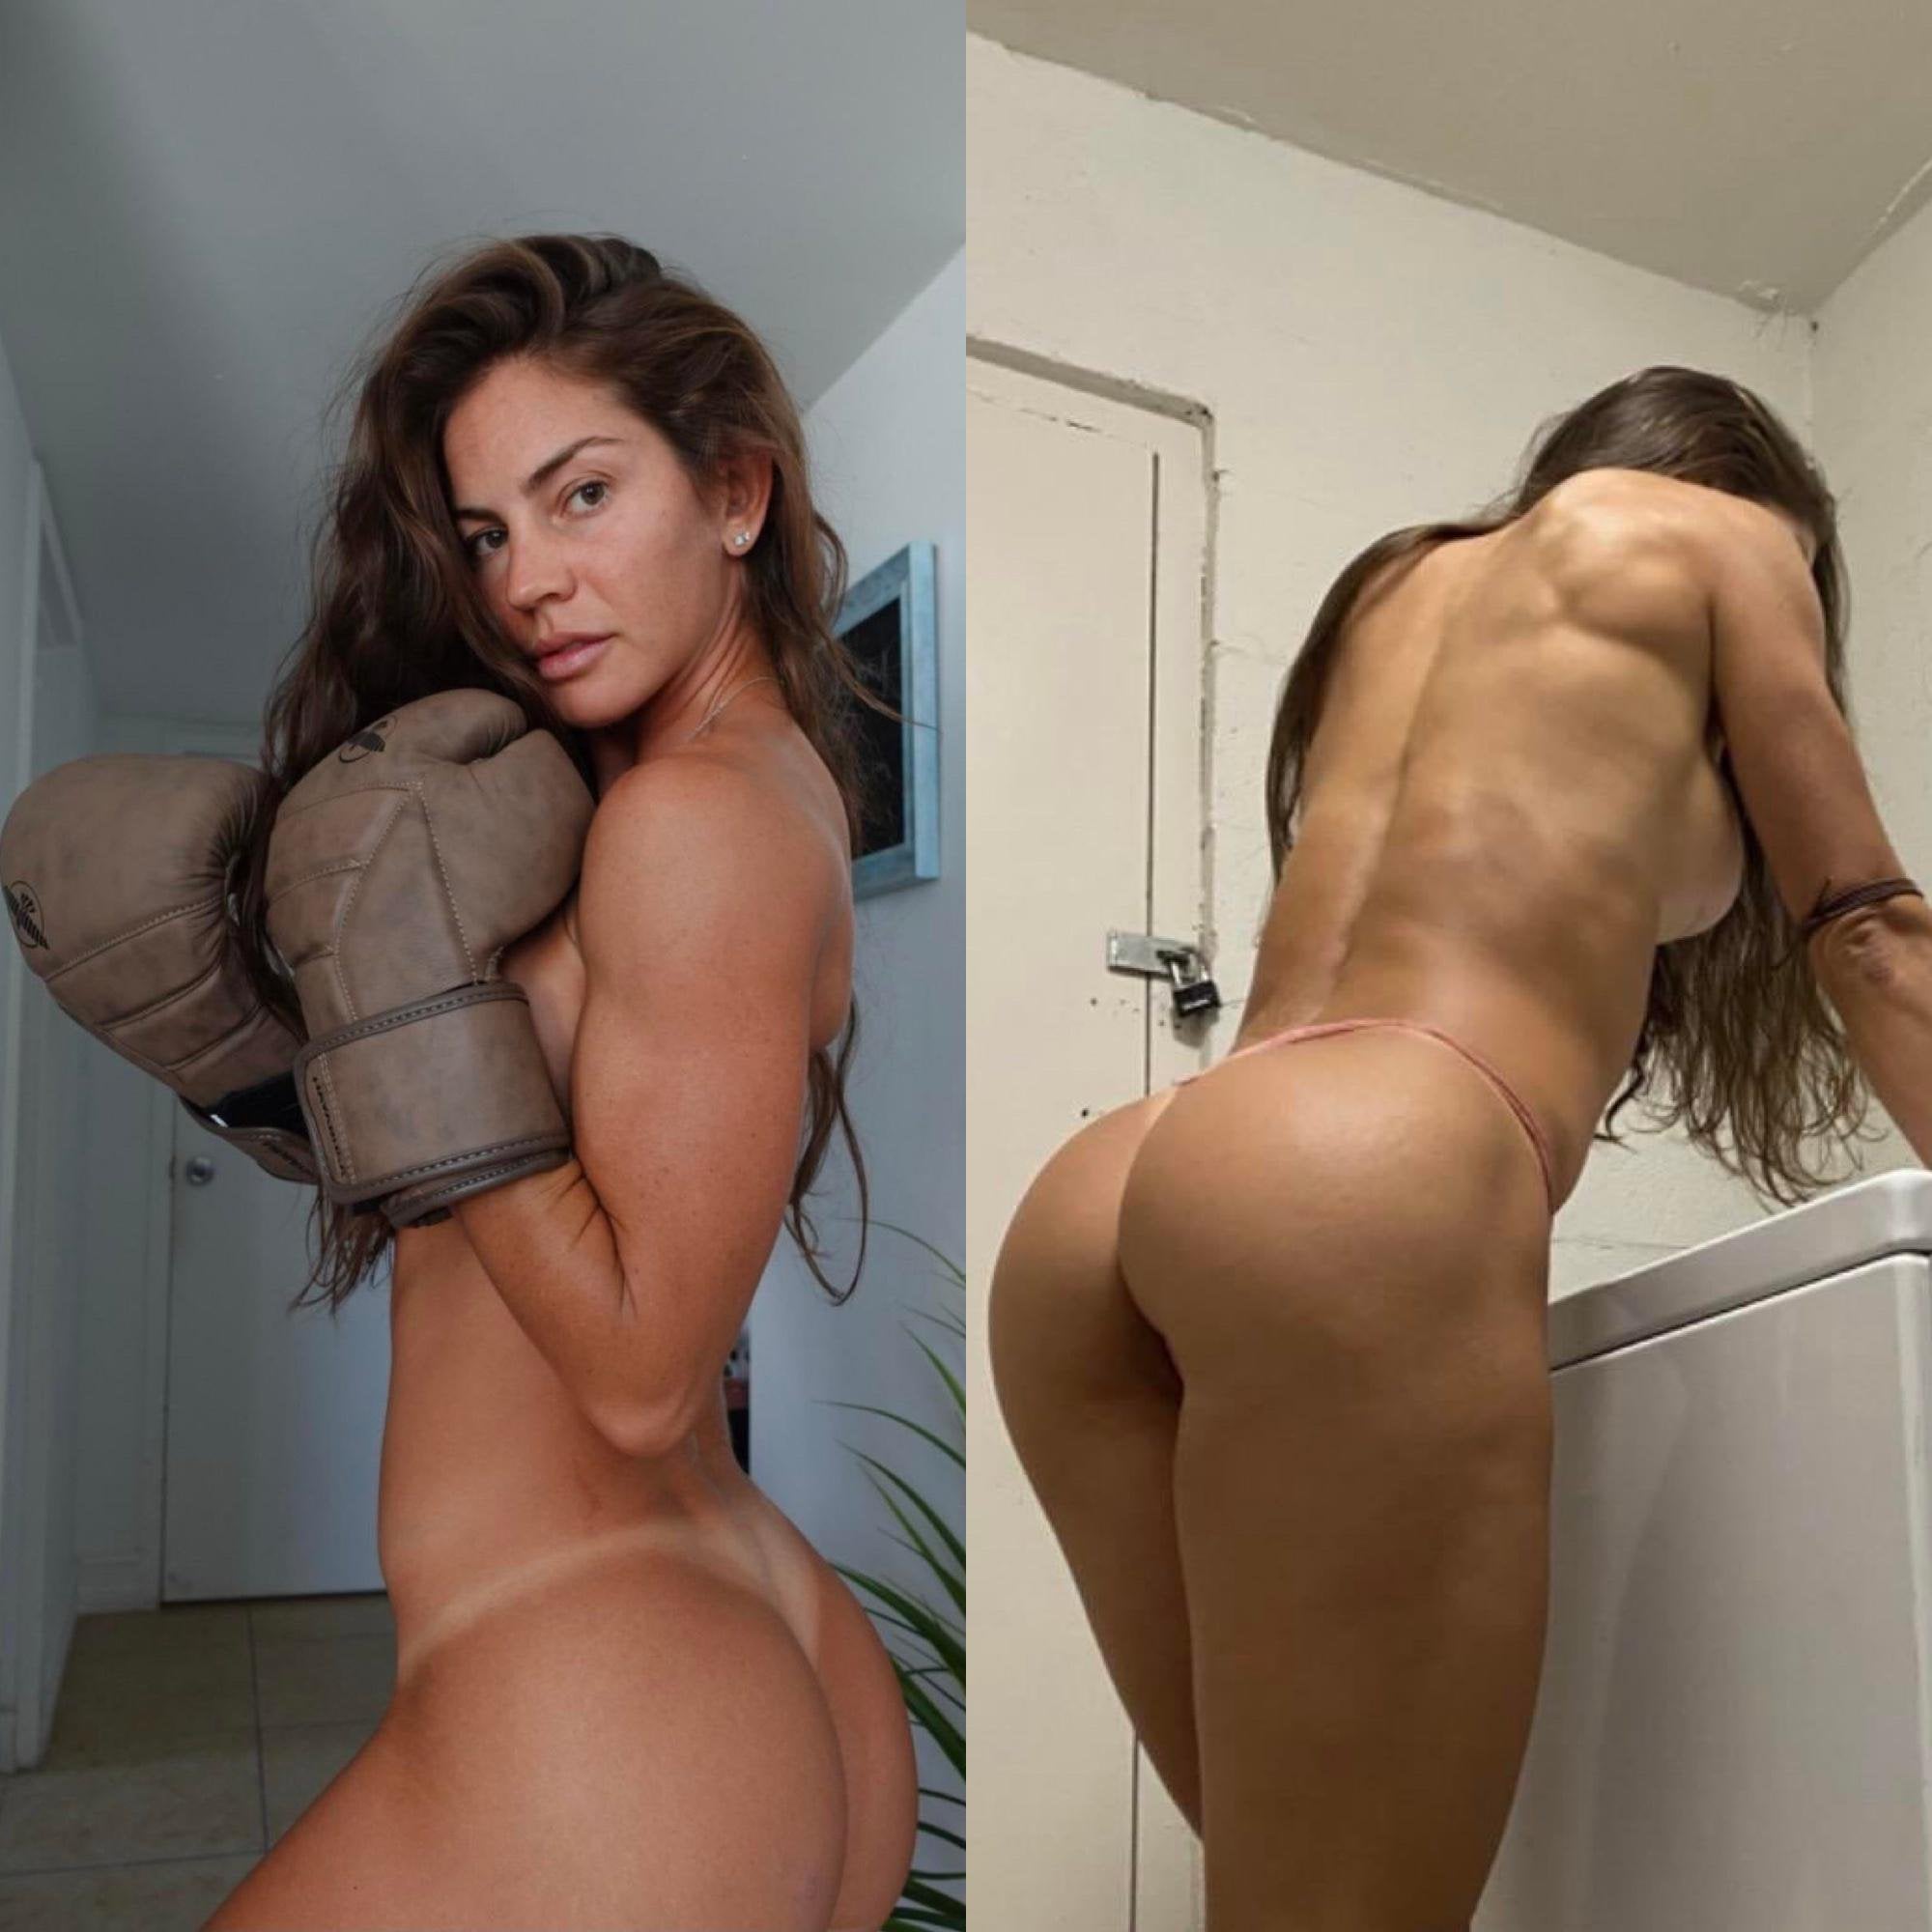 Female athlete nude leaked